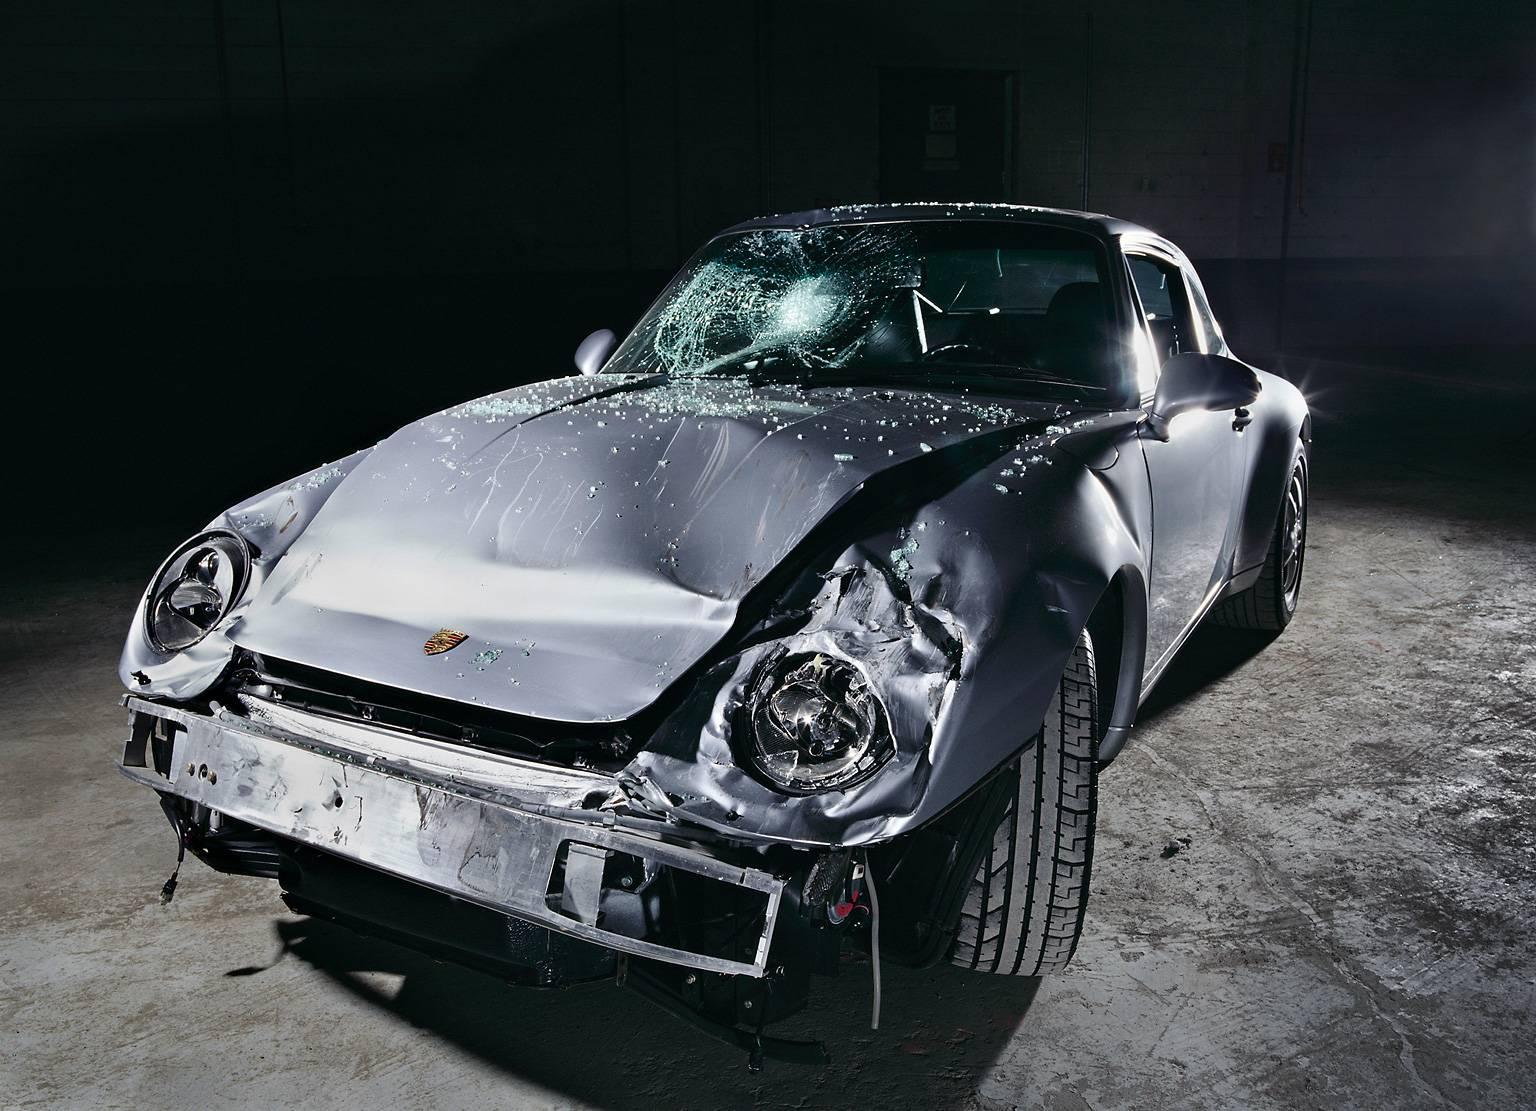 Color Photograph Frank Schott - Nine-One-One (Porsche 911) - photographie de nature morte d'un automobile accidenté emblématique